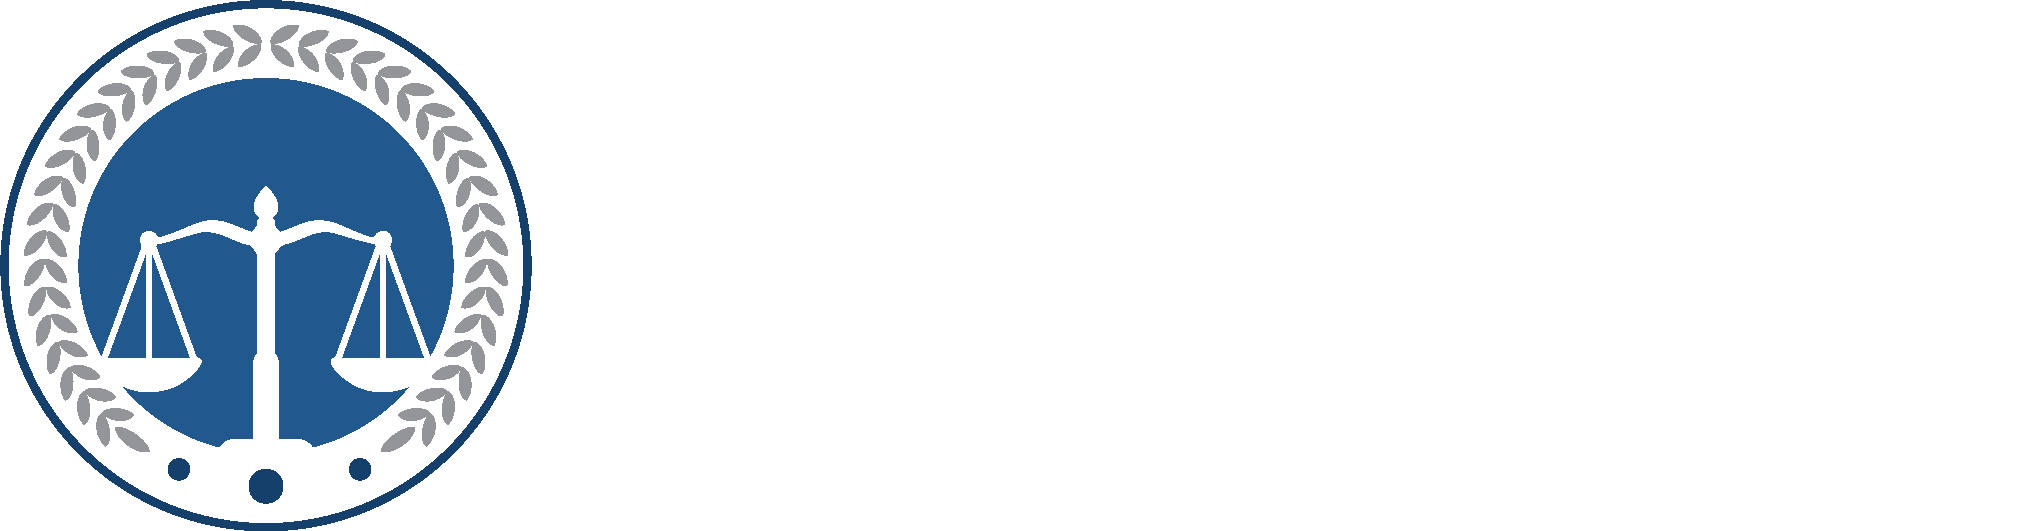 Rafael Law, LLC